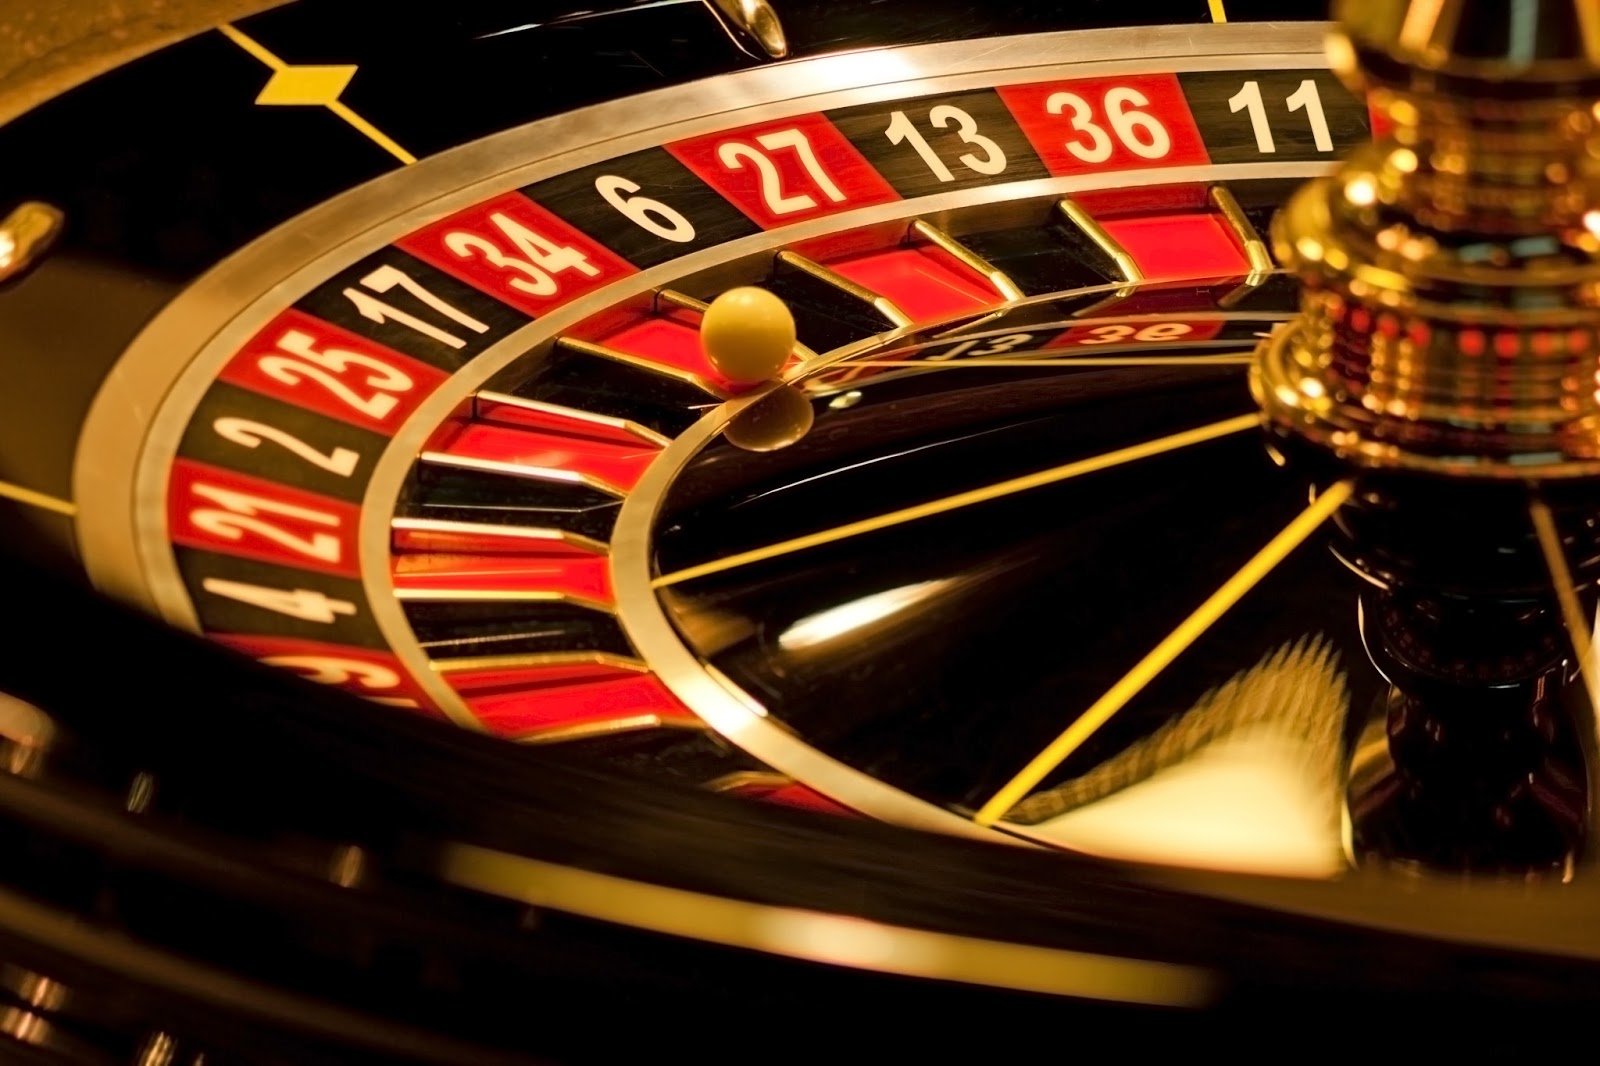 USA Casinos - Live Dealer Casino Sites For US Players!